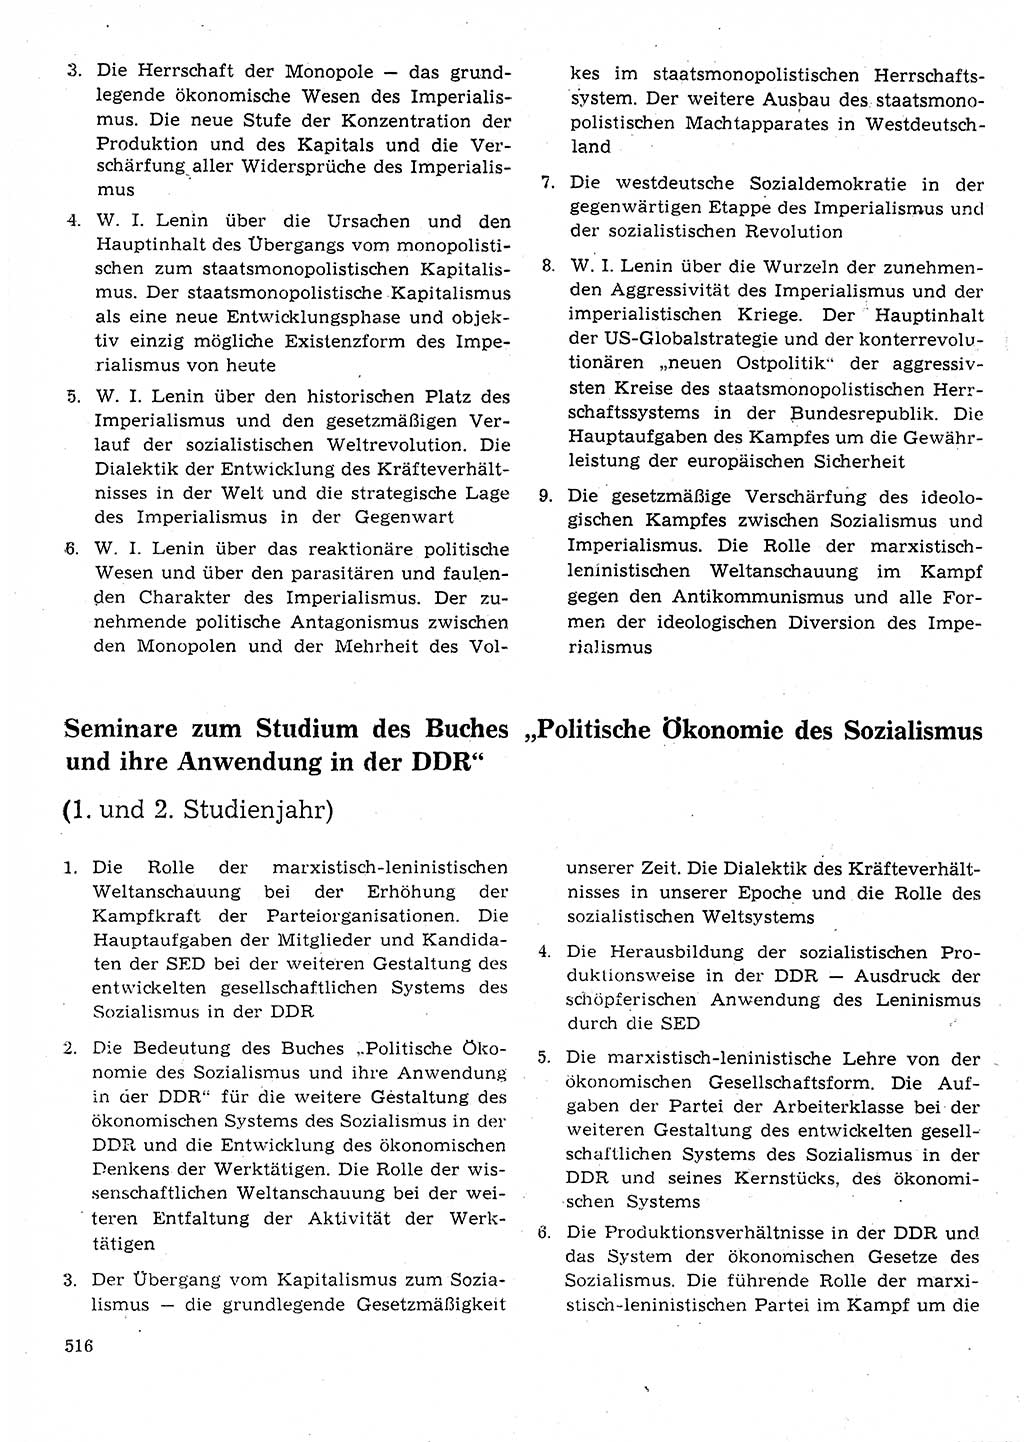 Neuer Weg (NW), Organ des Zentralkomitees (ZK) der SED (Sozialistische Einheitspartei Deutschlands) für Fragen des Parteilebens, 25. Jahrgang [Deutsche Demokratische Republik (DDR)] 1970, Seite 516 (NW ZK SED DDR 1970, S. 516)